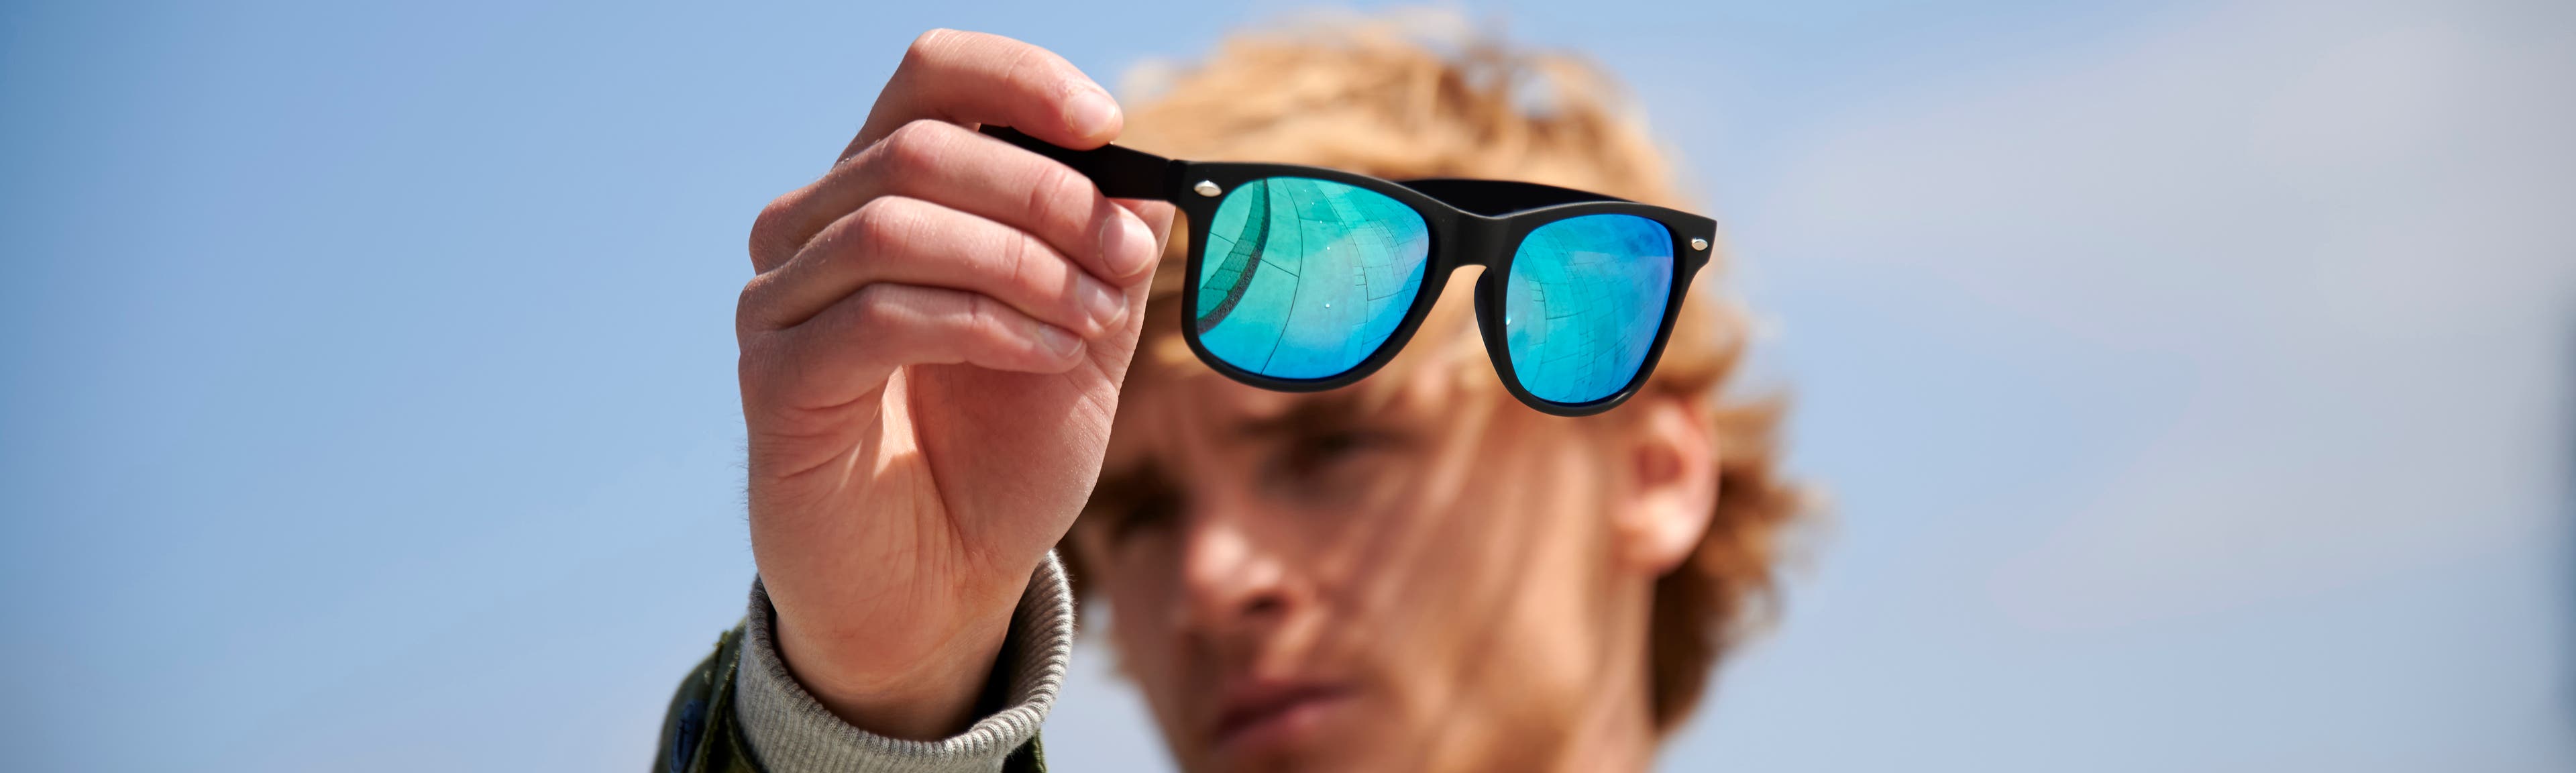 Gafas de sol: protege tus ojos del sol